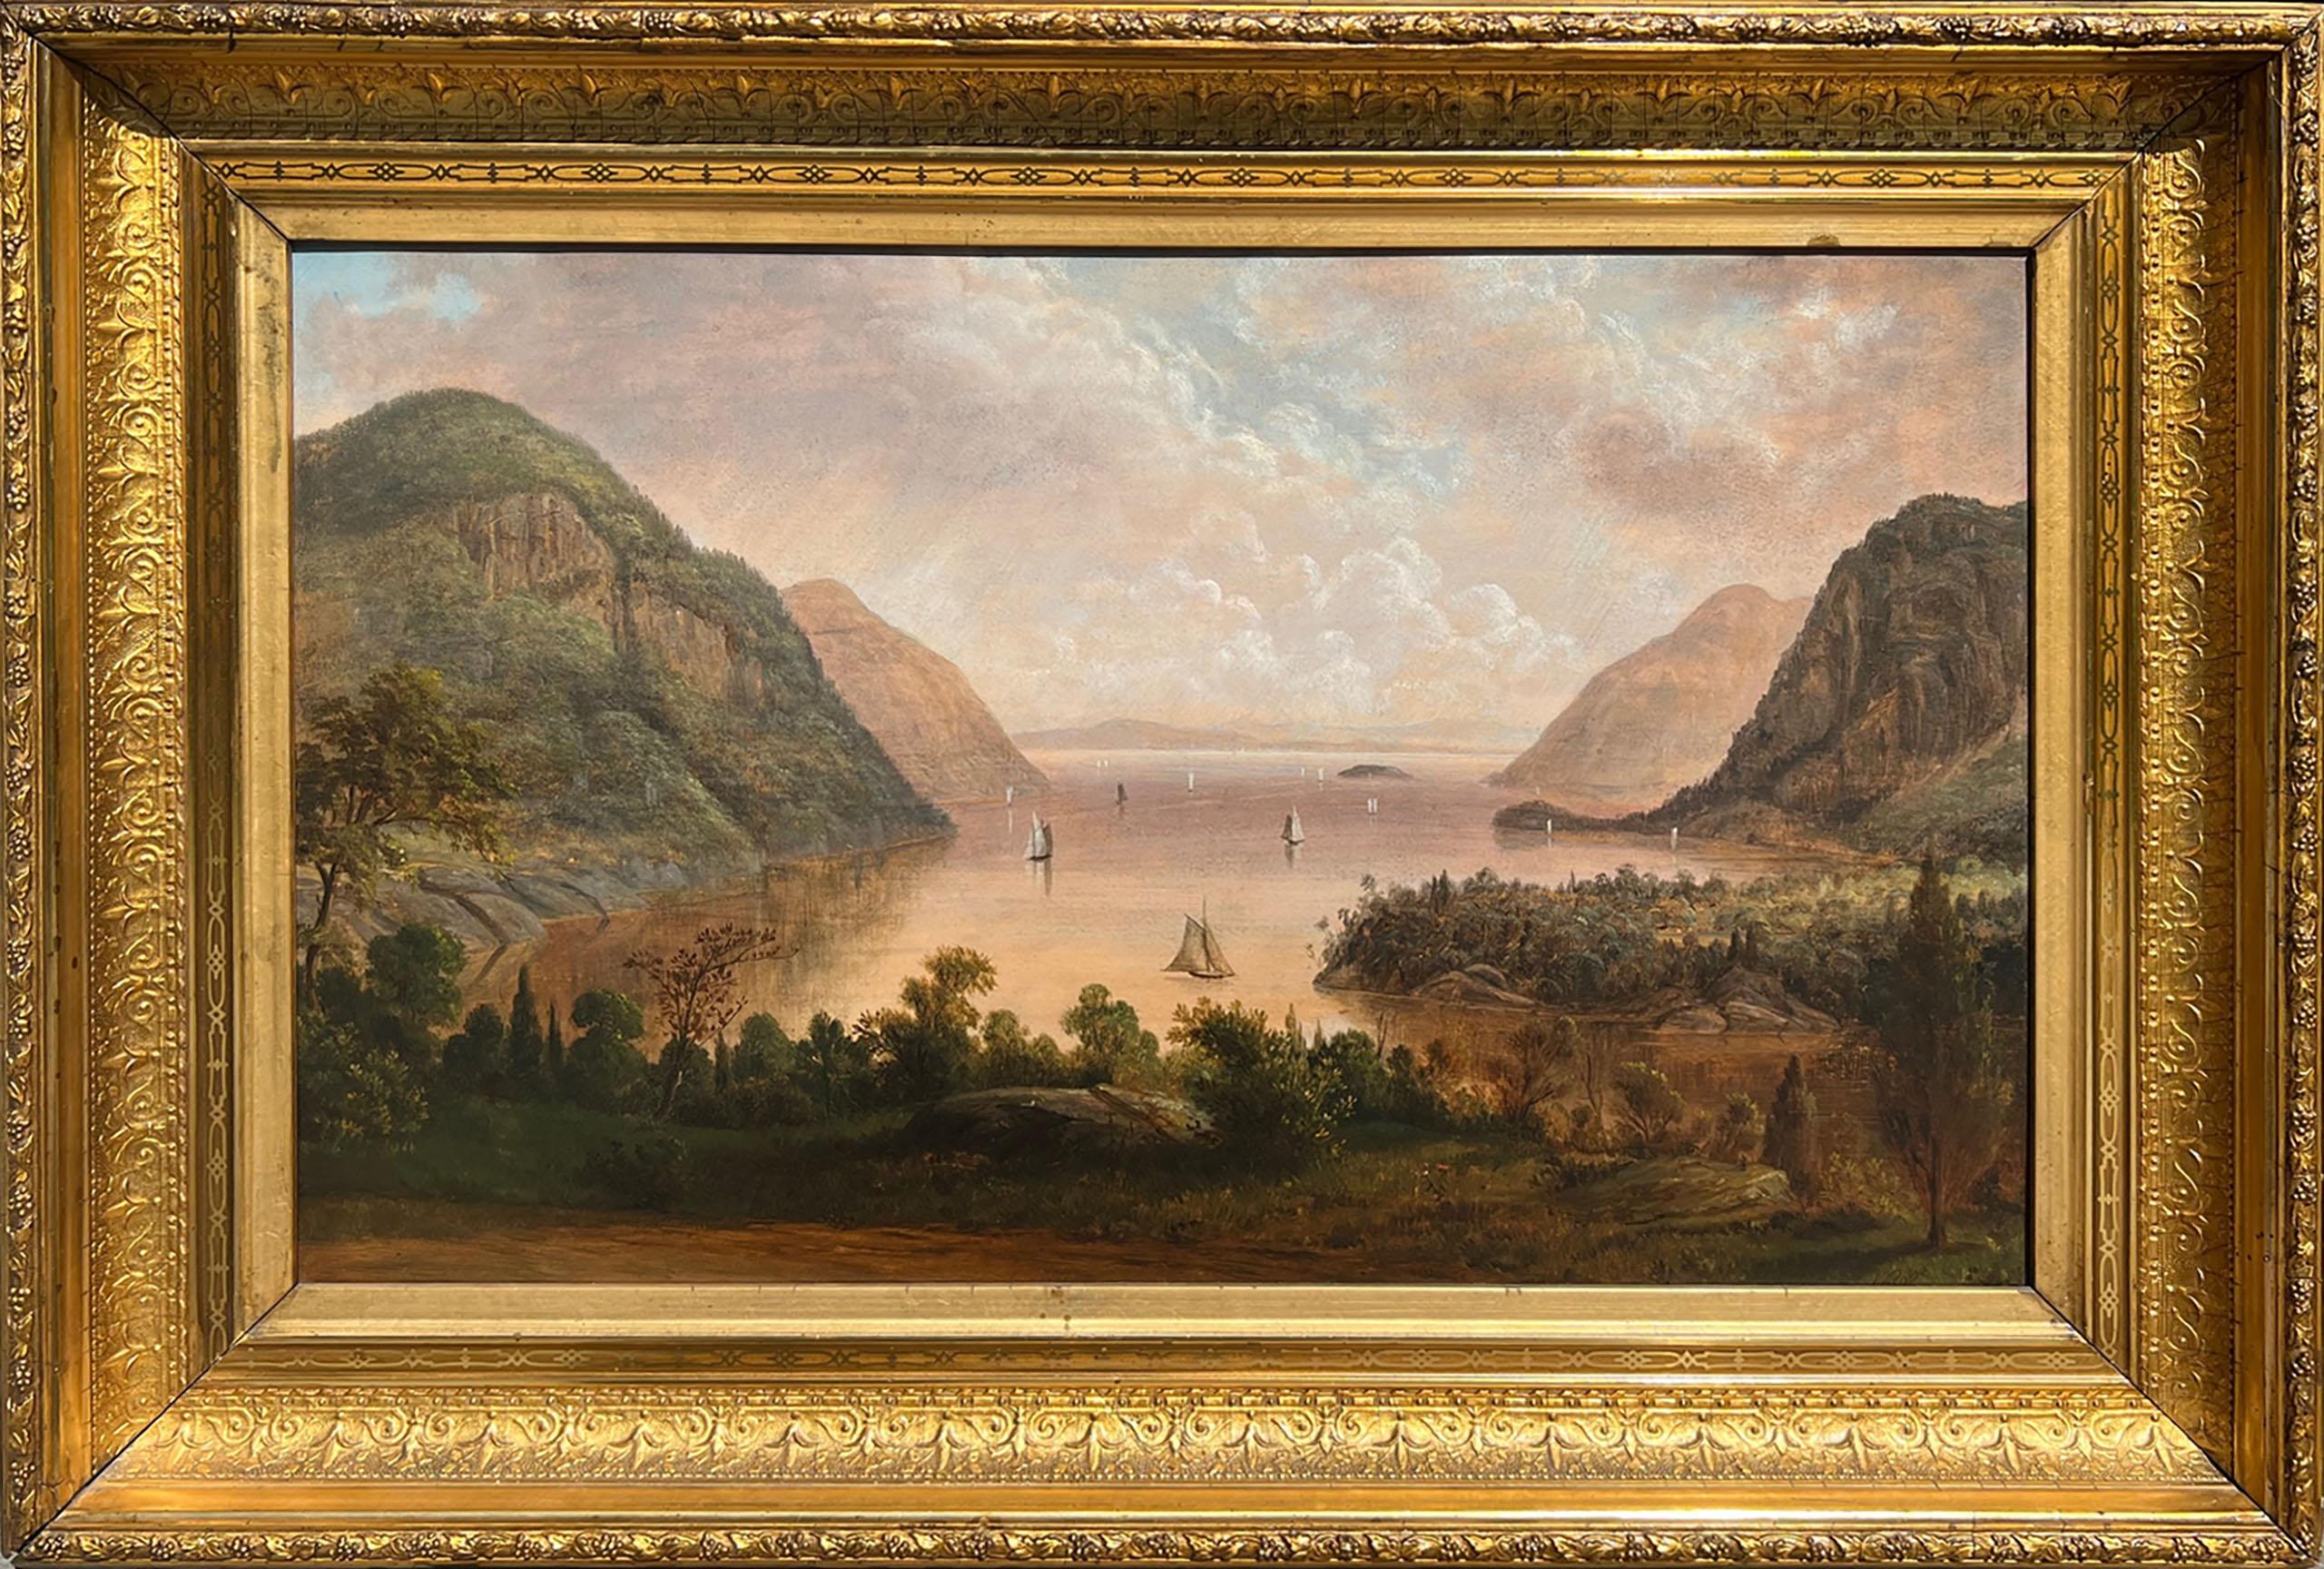 Highlands - Hudson River von West Point aus von Thomas B. Pope (Amerikaner, 1834-1891)